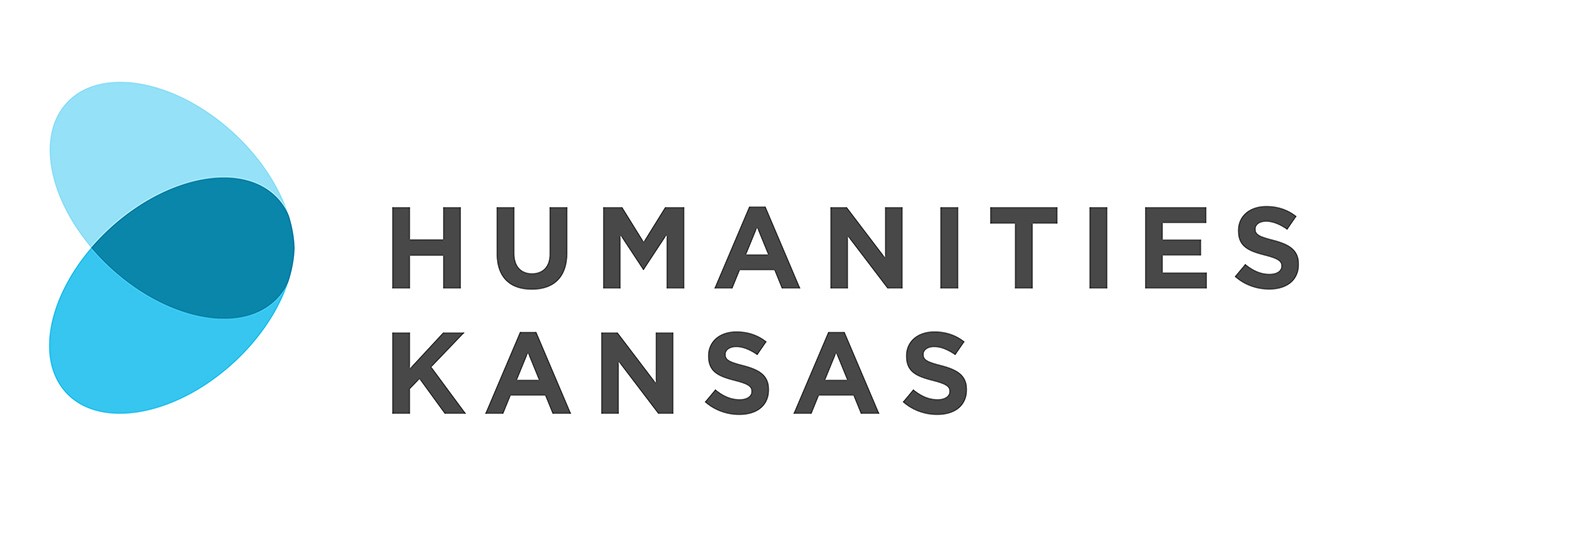 Humanities Kansas logo